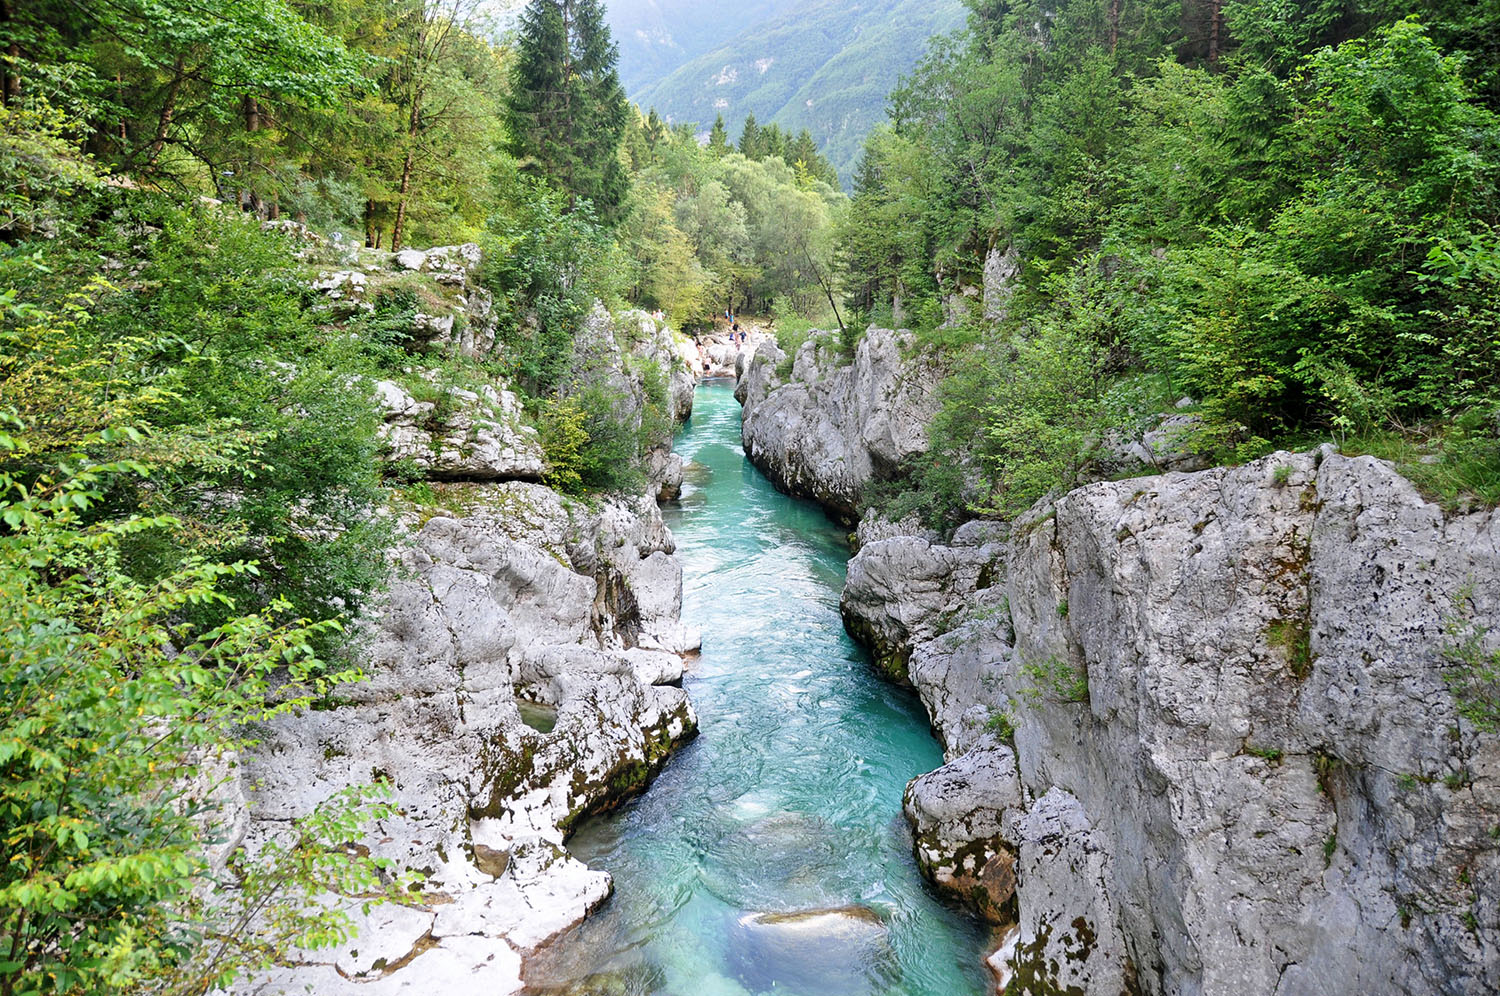 索卡河谷最佳风景斯洛文尼亚